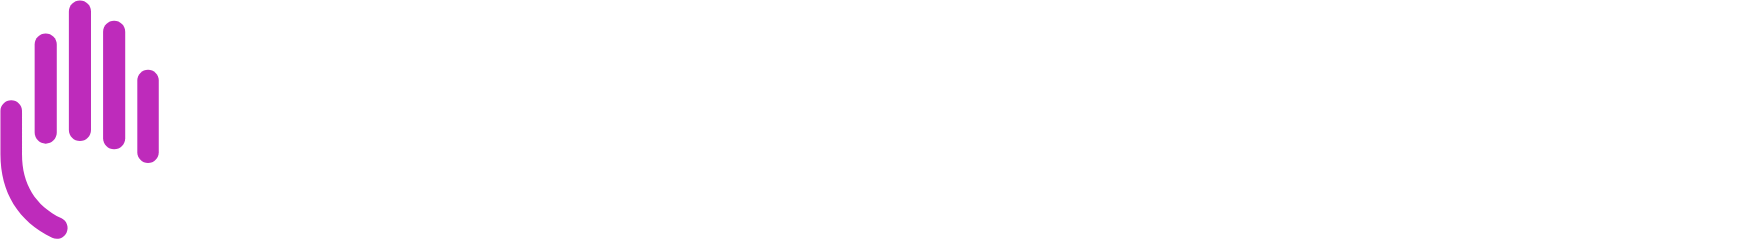 Bristol-Myers Squibb Logo groß für dunkle Hintergründe (transparentes PNG)